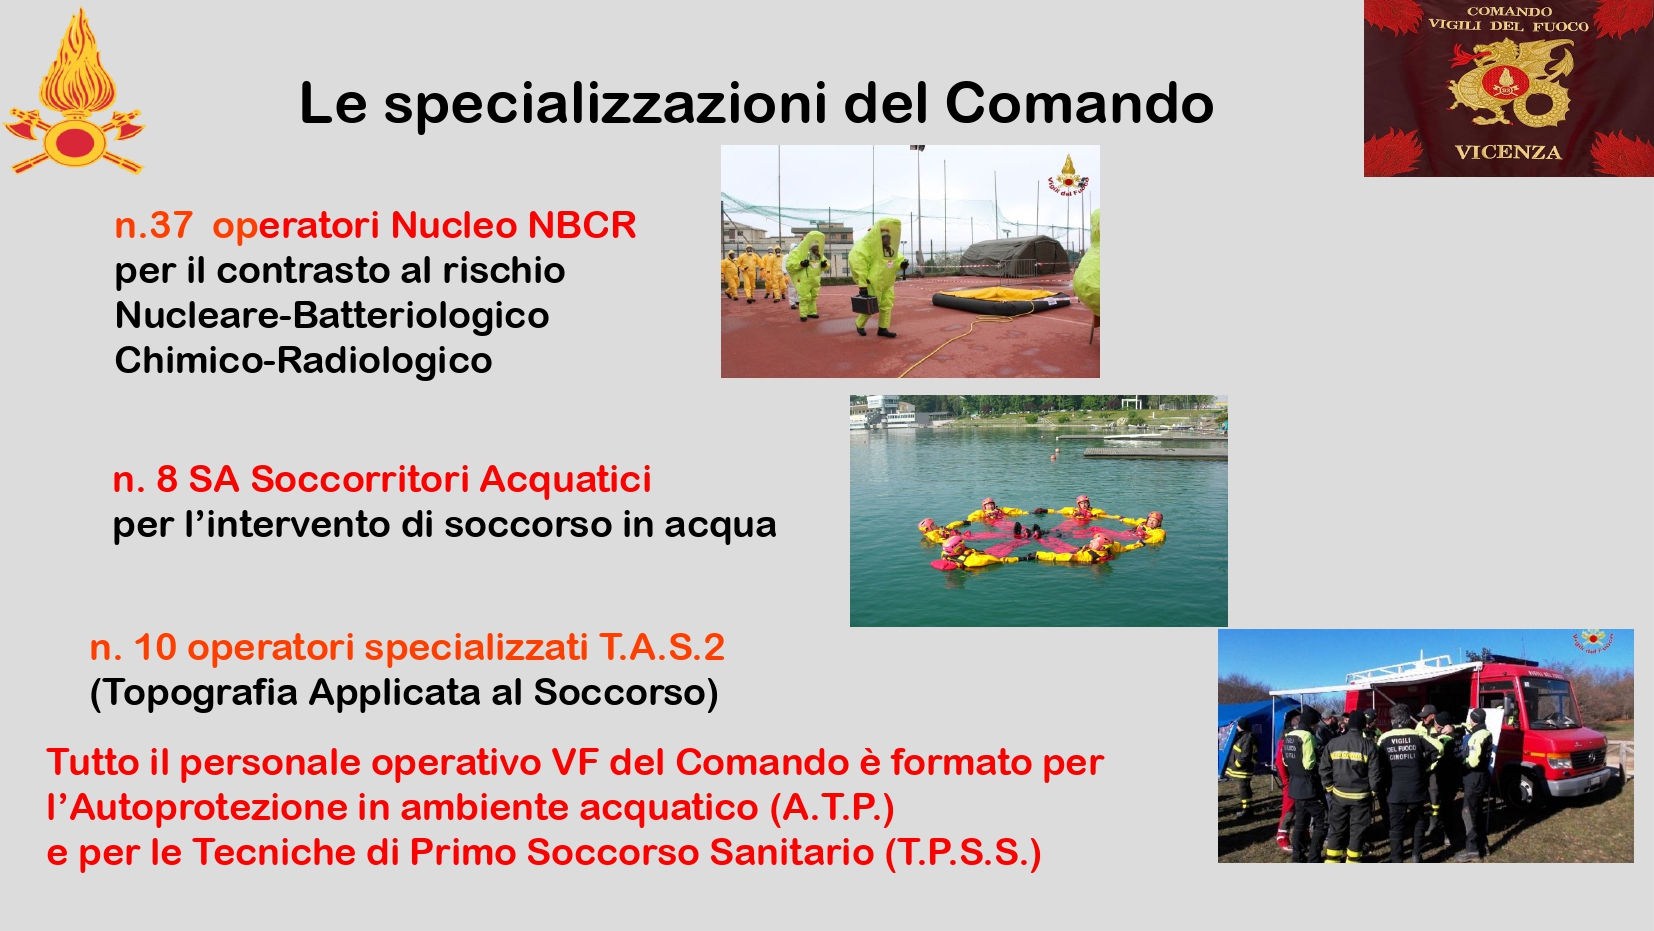 Presentazione_ Comando Vicenza_page-0014